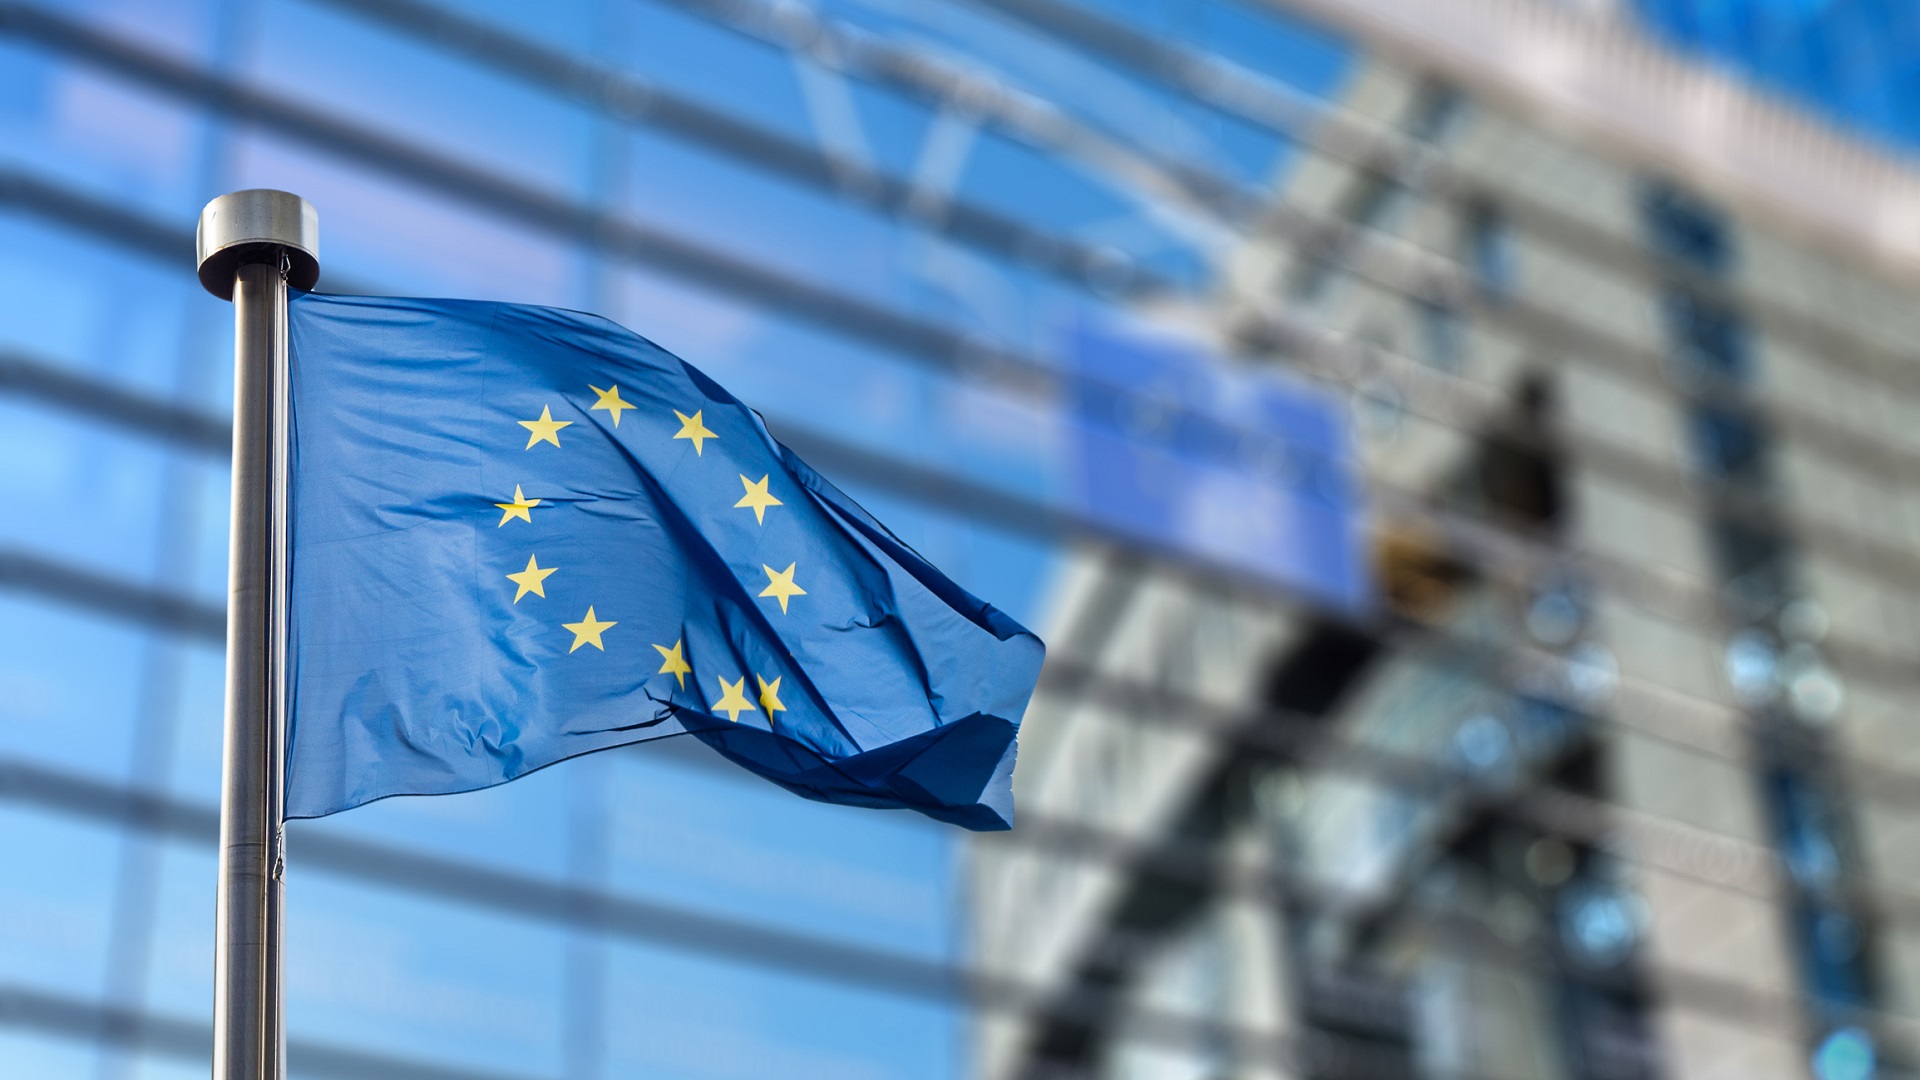 تعویق مهلت تصمیم گیری کمیسیون اتحادیه اروپا بر سر قرارداد اکتیویژن و مایکروسافت